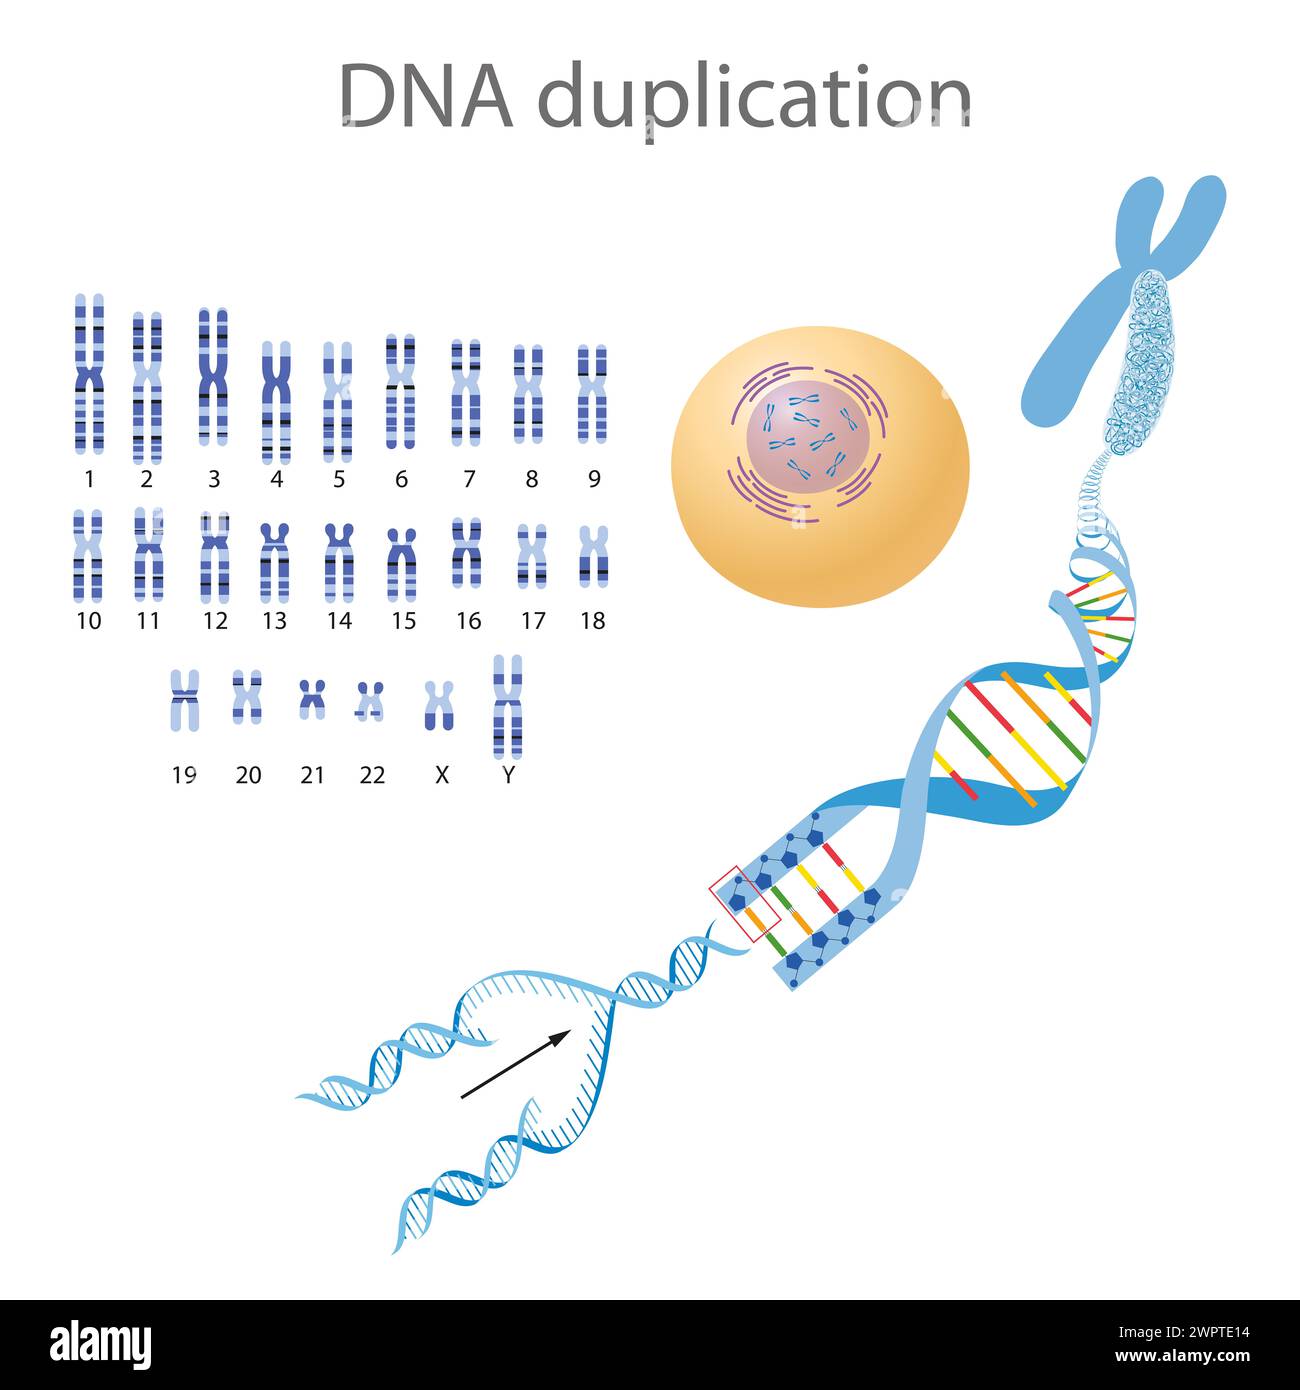 Illustration de la structure et de la réplication de l'ADN Banque D'Images